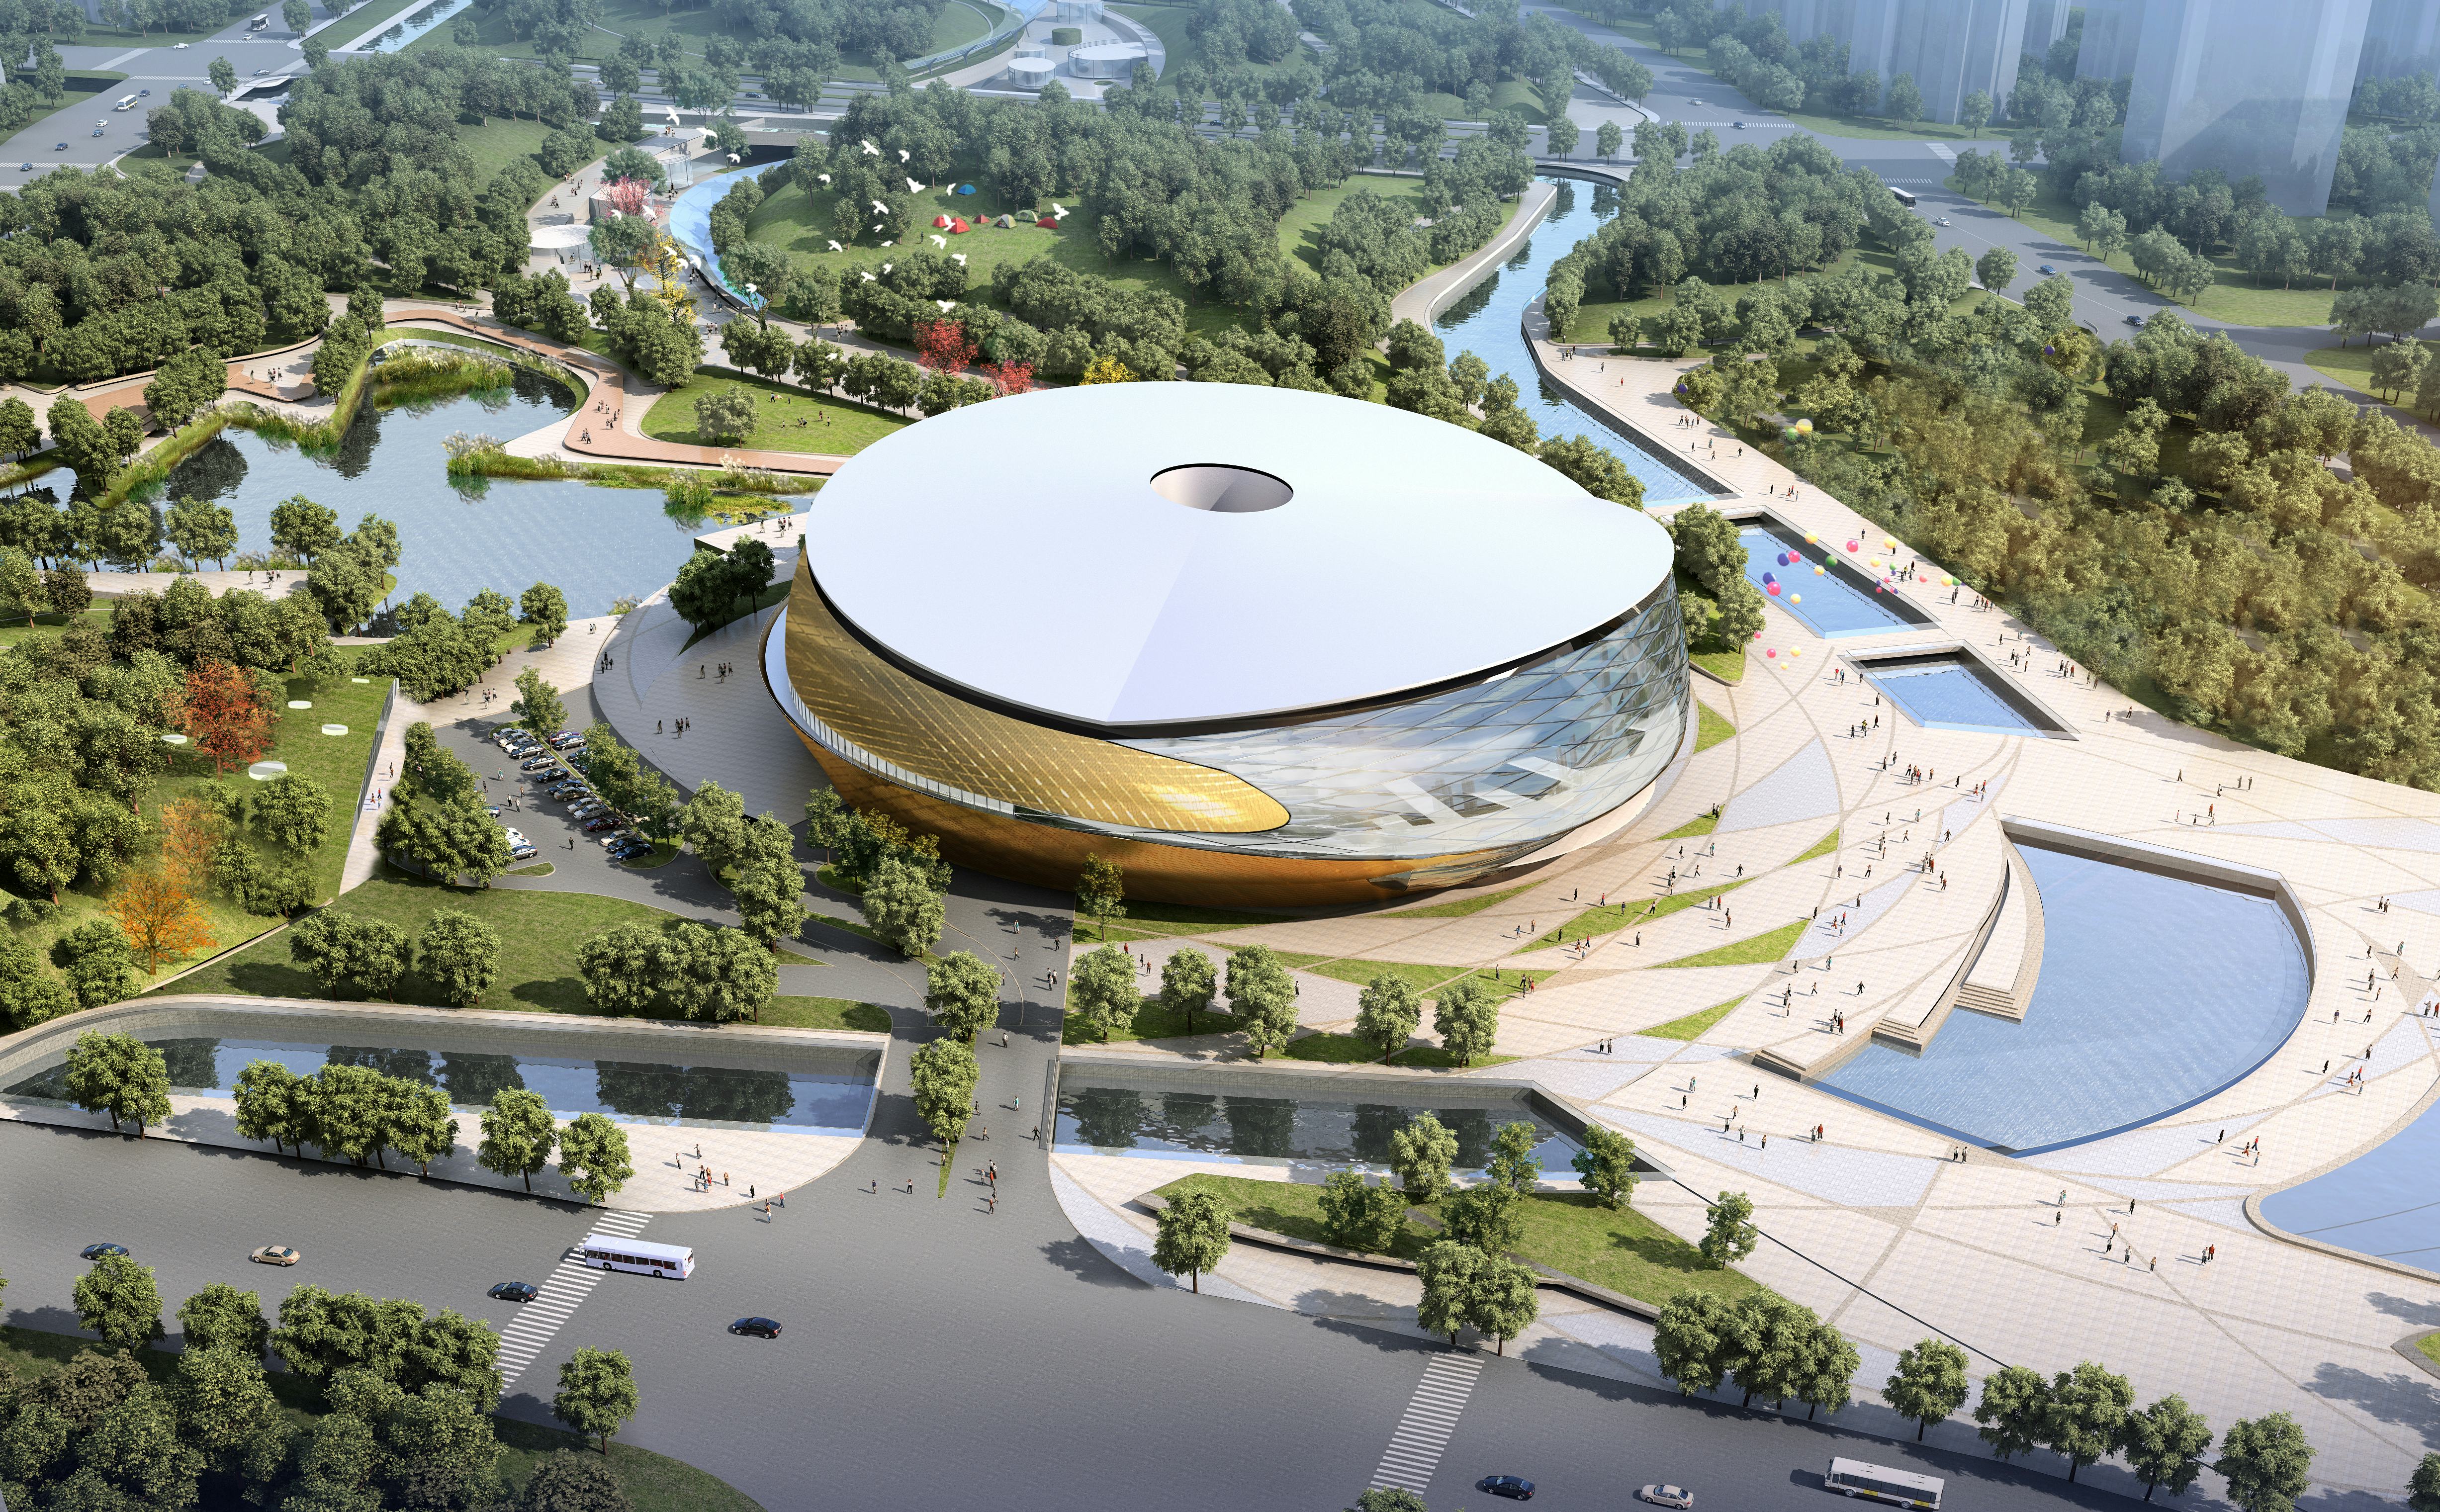 Tafeltennisstadion voor de Aziatische Spelen van 2022 in Hangzhou. Archi-Tectonics won samen met landschapsarchitect !Melk de prijsvraag voor dit park.